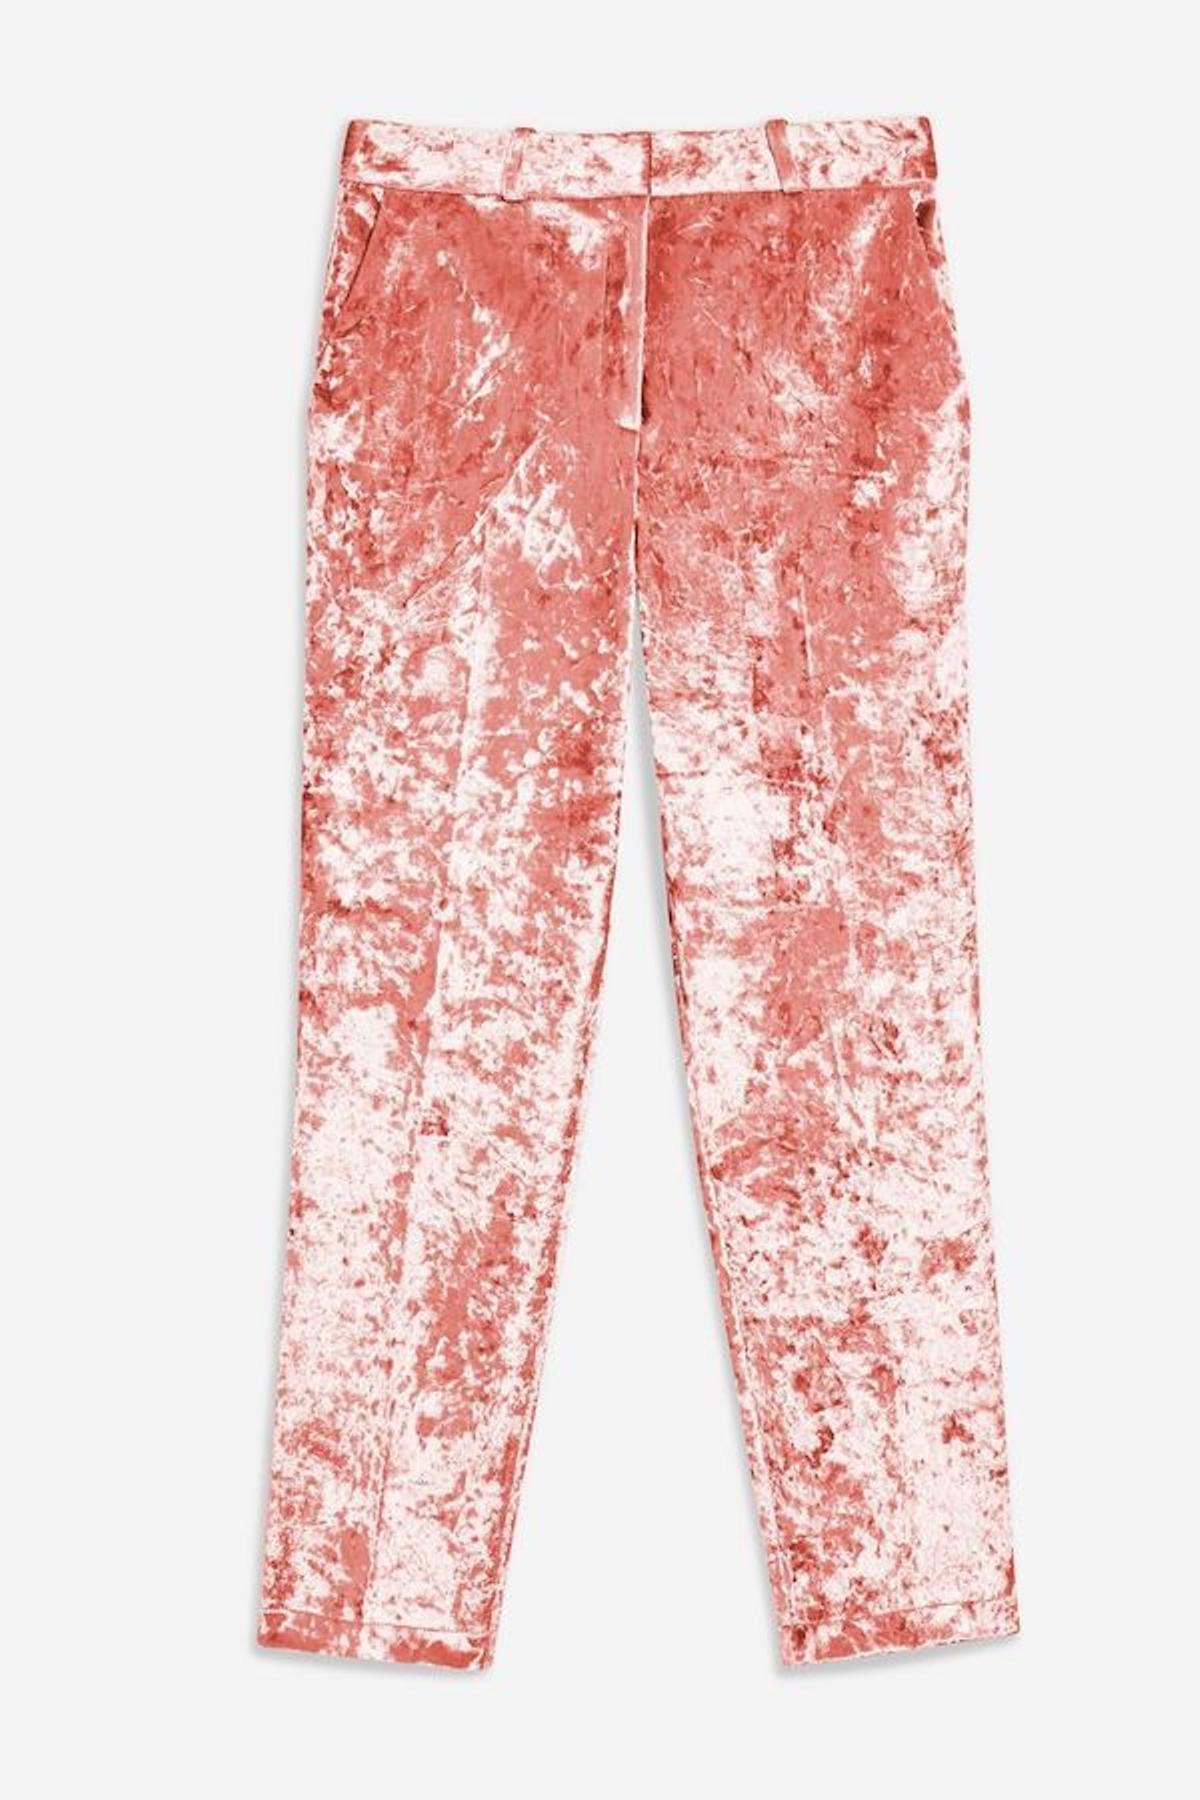 El pantalón Velvet rosa